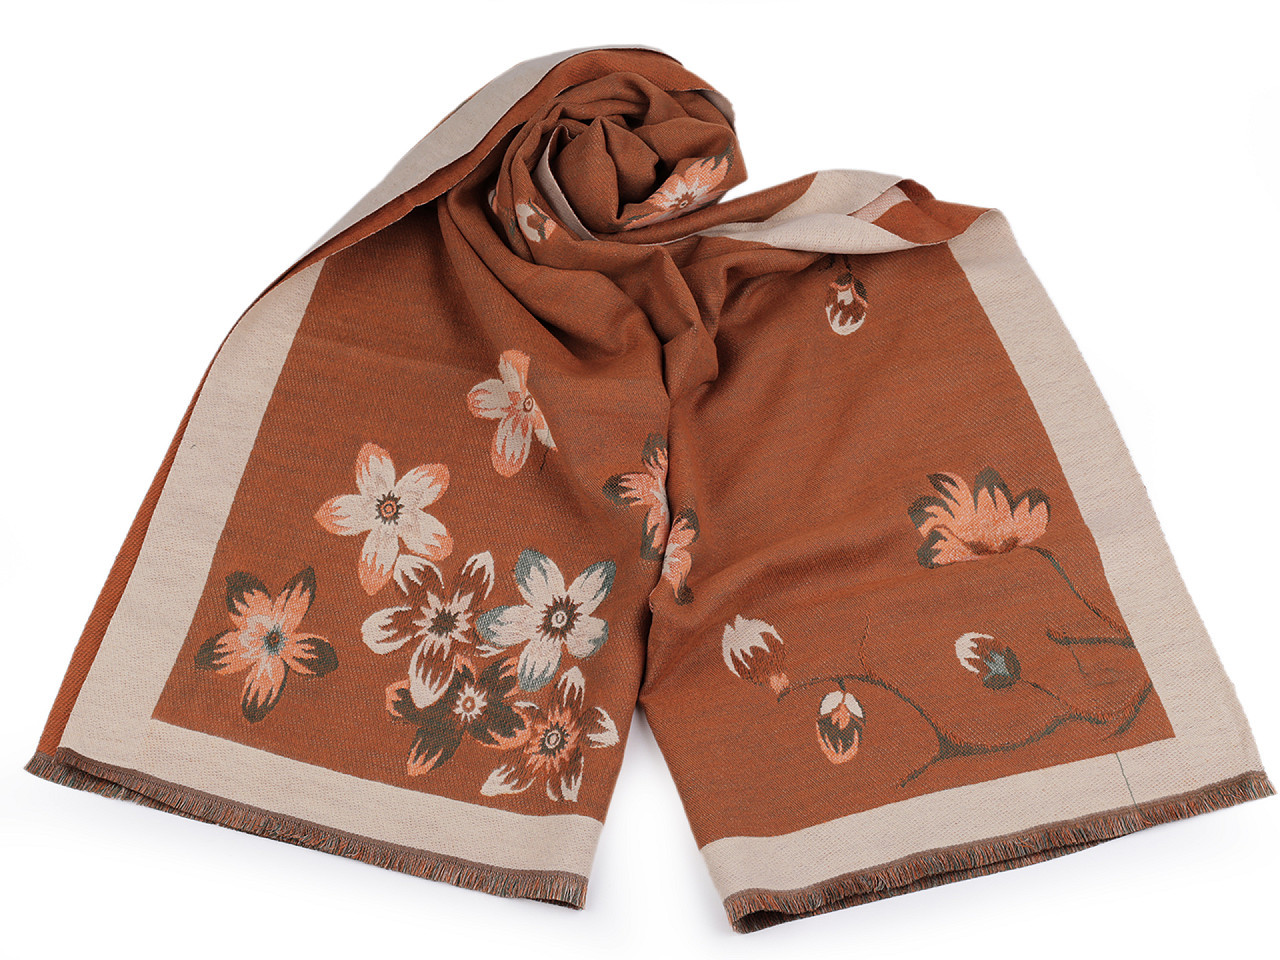 Šátek / šála typu kašmír s třásněmi, květy 65x190 cm, barva 4 béžová tm. béžová světlá